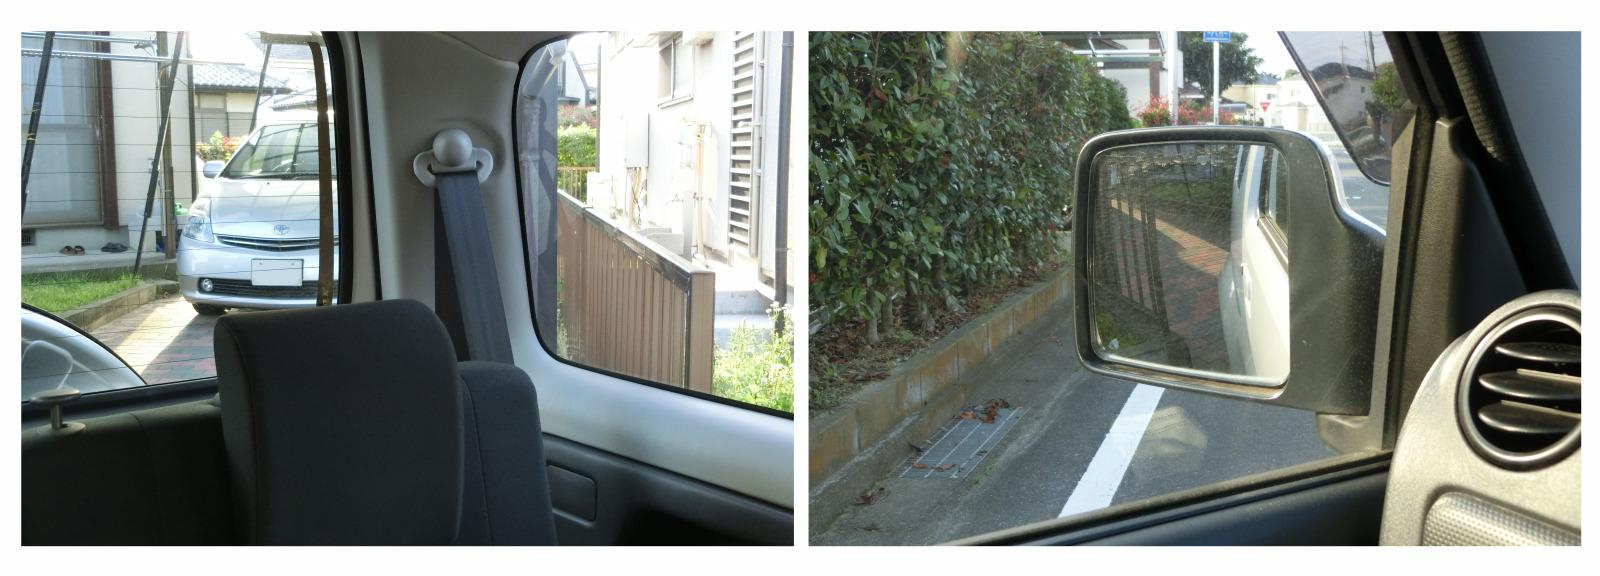 バック駐車 車庫入れで簡単にまっすぐスマートに決めるコツは目線とハンドル操作 Clicccar Com